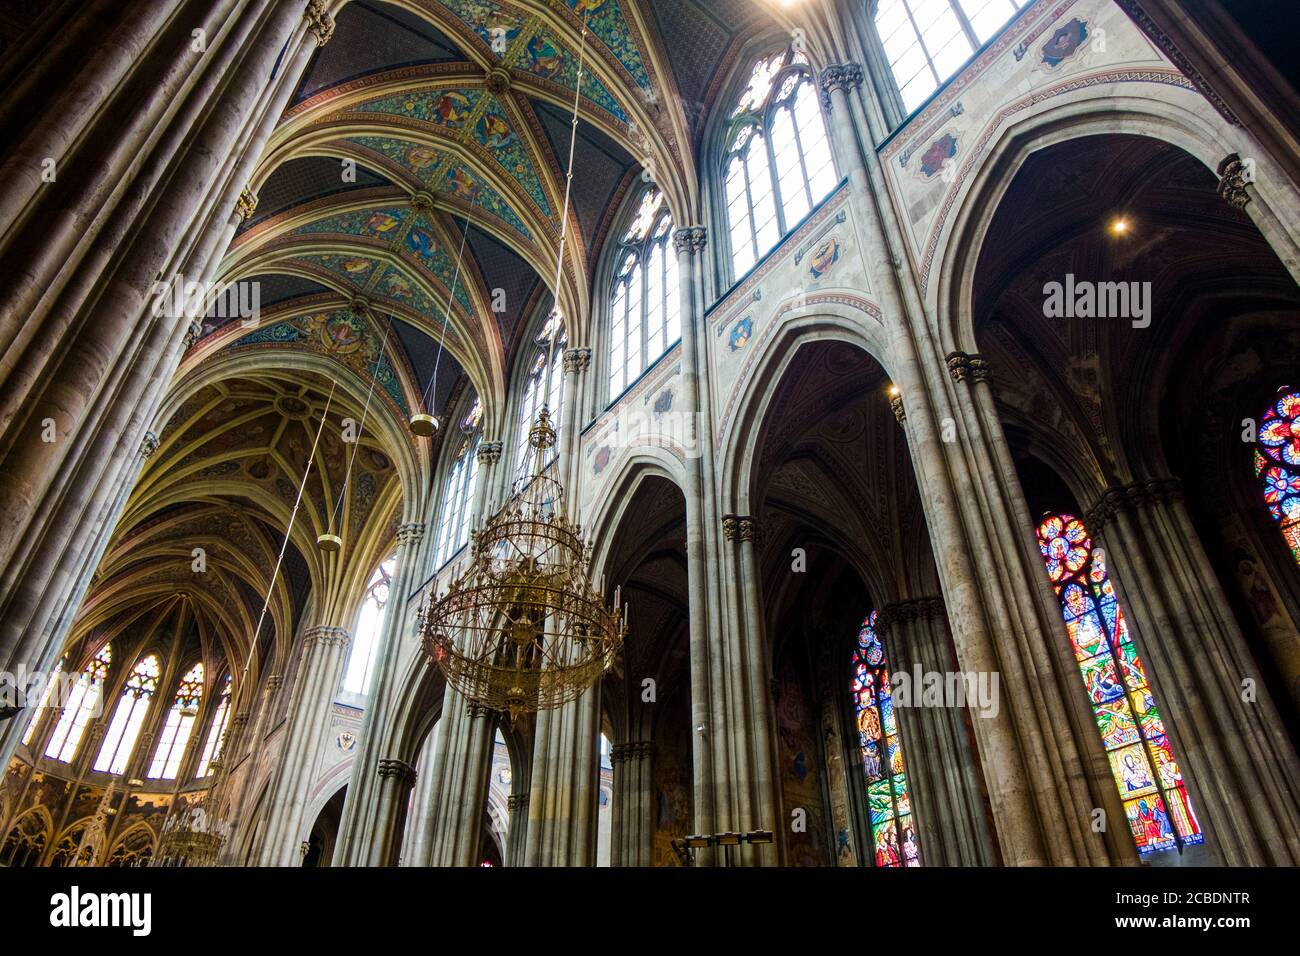 Innenansicht der aufragenden, gewölbten, bemalten Decke der Votivkirche, Votivkirche. In Wien, Österreich. Stockfoto